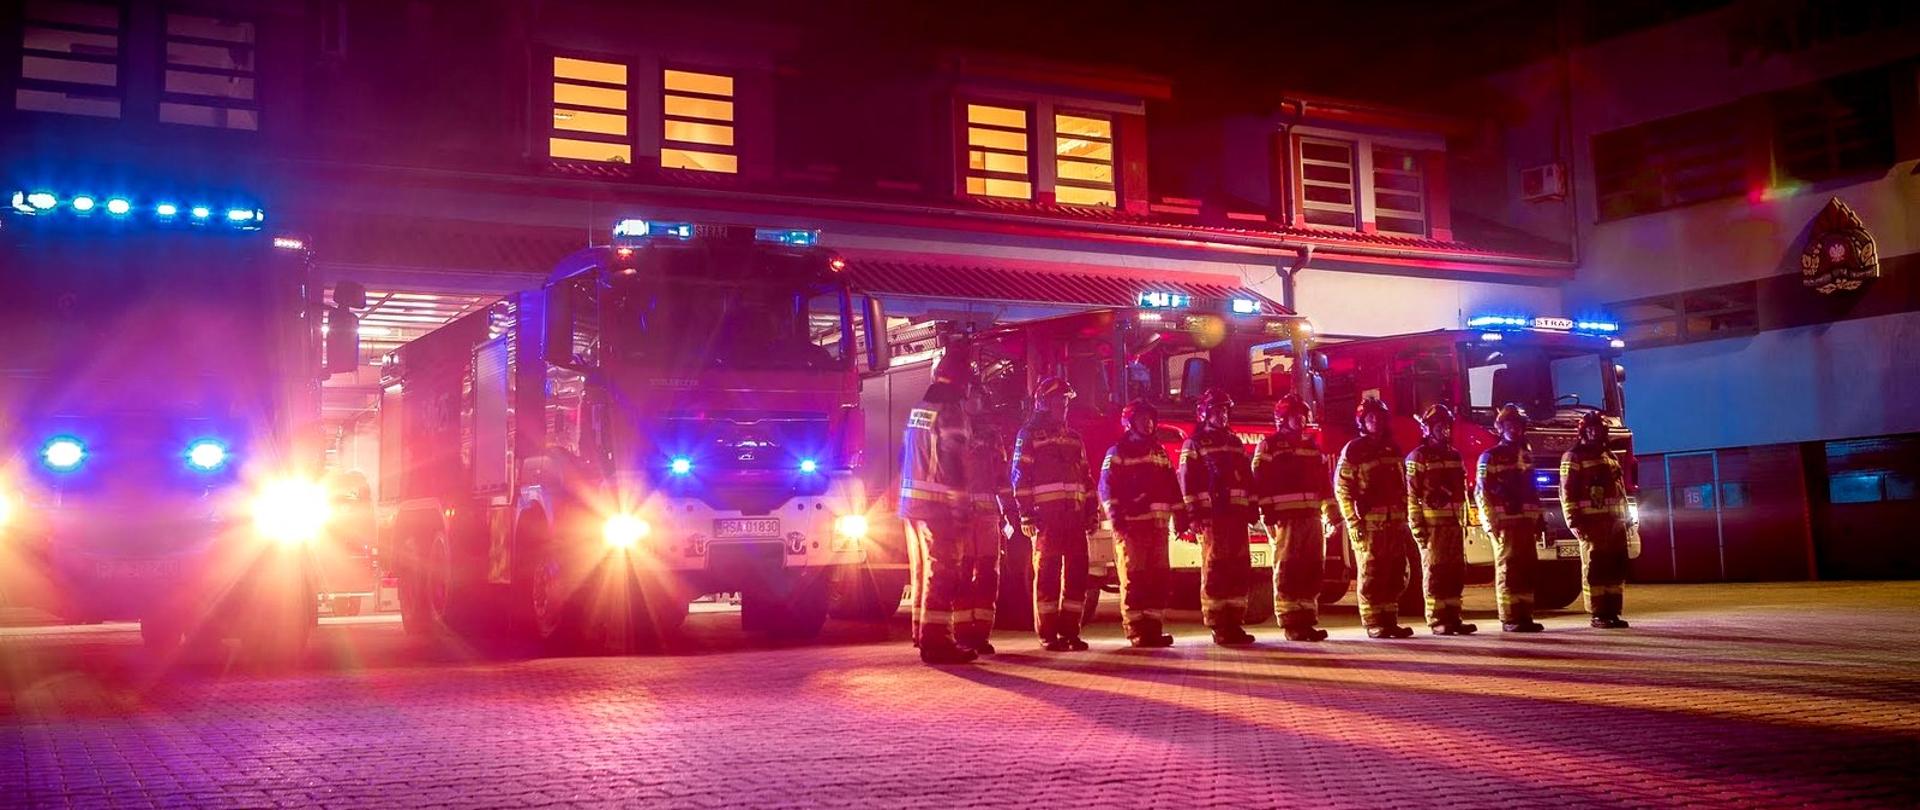 Zdjęcie zrobione przed jednostką ratowniczo-gaśniczą. Na fotografii widać cztery samochody gaśnicze z włączonymi sygnałami świetlnymi. Przed samochodami, w szeregu stoją strażacy ubrani w mundury specjalne.